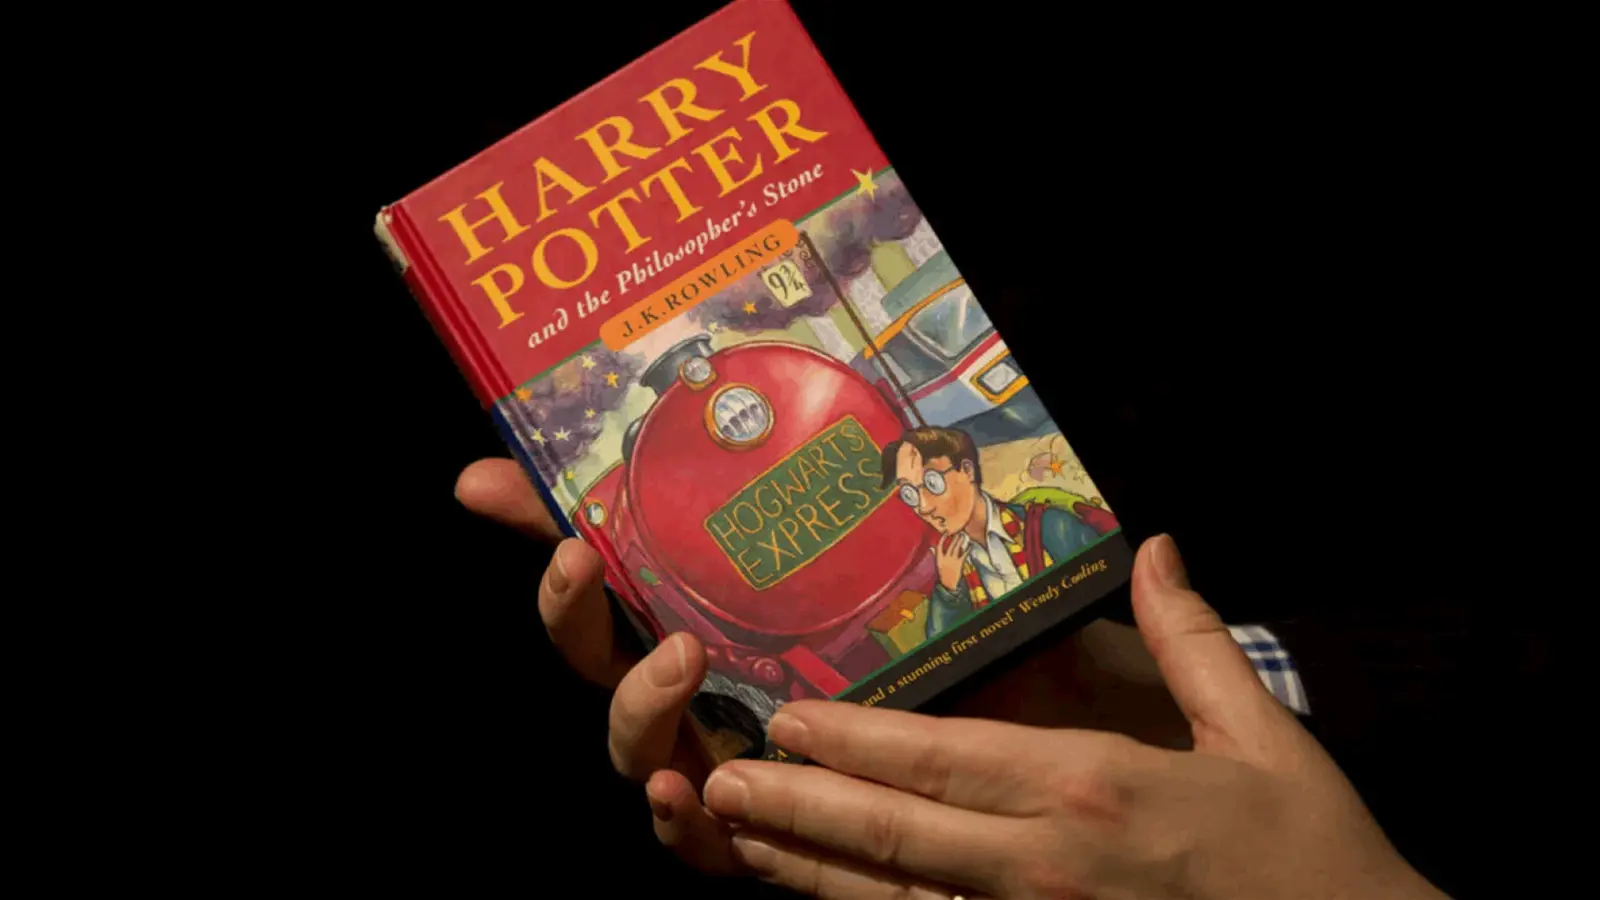 بمبلغ ضخم.. بيع غلاف الكتاب الأول من سلسلة "هاري بوتر"